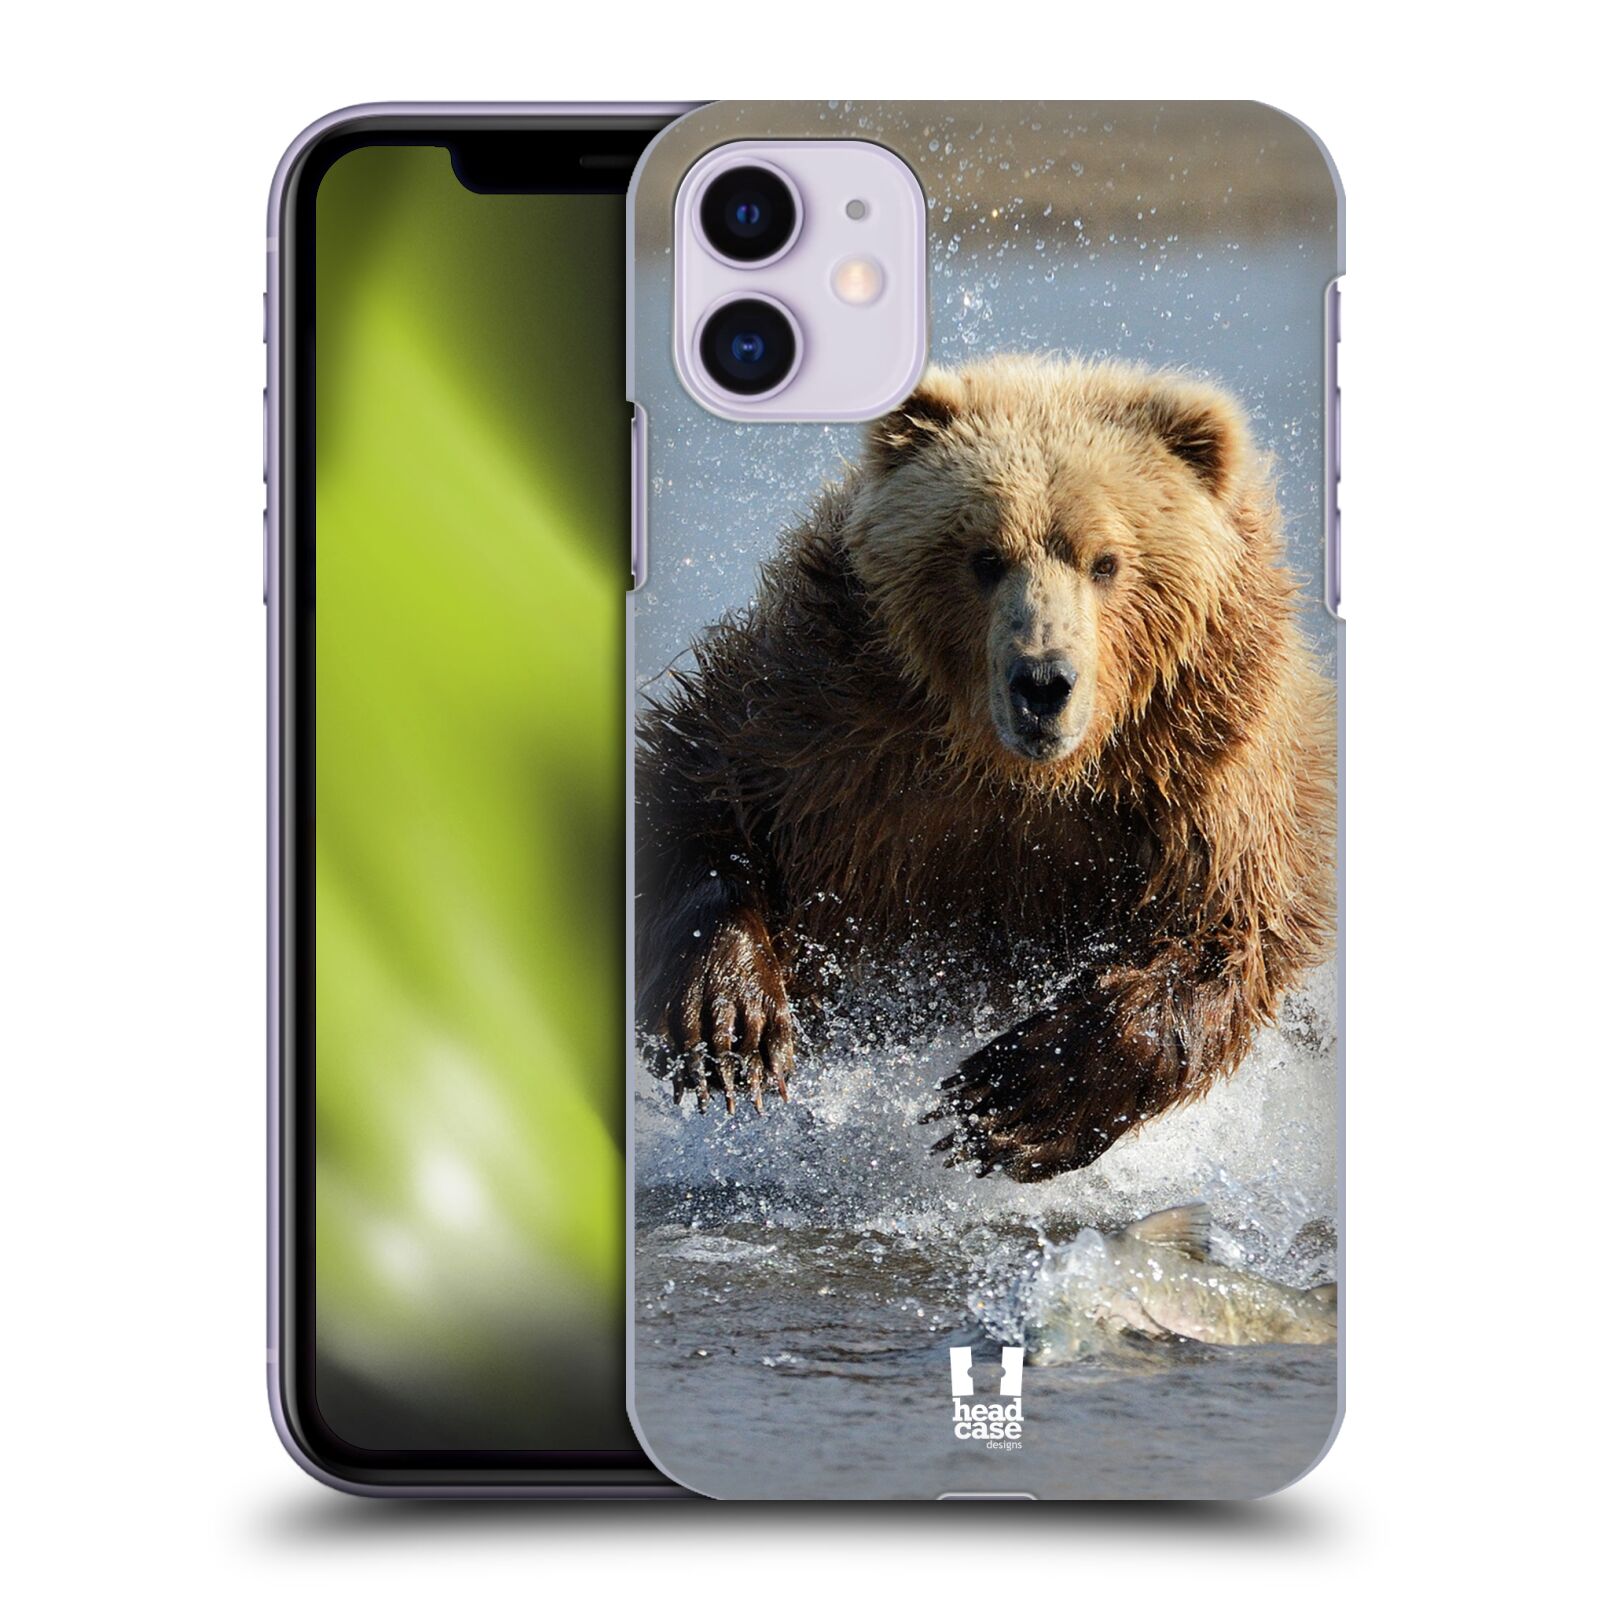 Pouzdro na mobil Apple Iphone 11 - HEAD CASE - vzor Divočina, Divoký život a zvířata foto MEDVĚD GRIZZLY HŇEDÁ